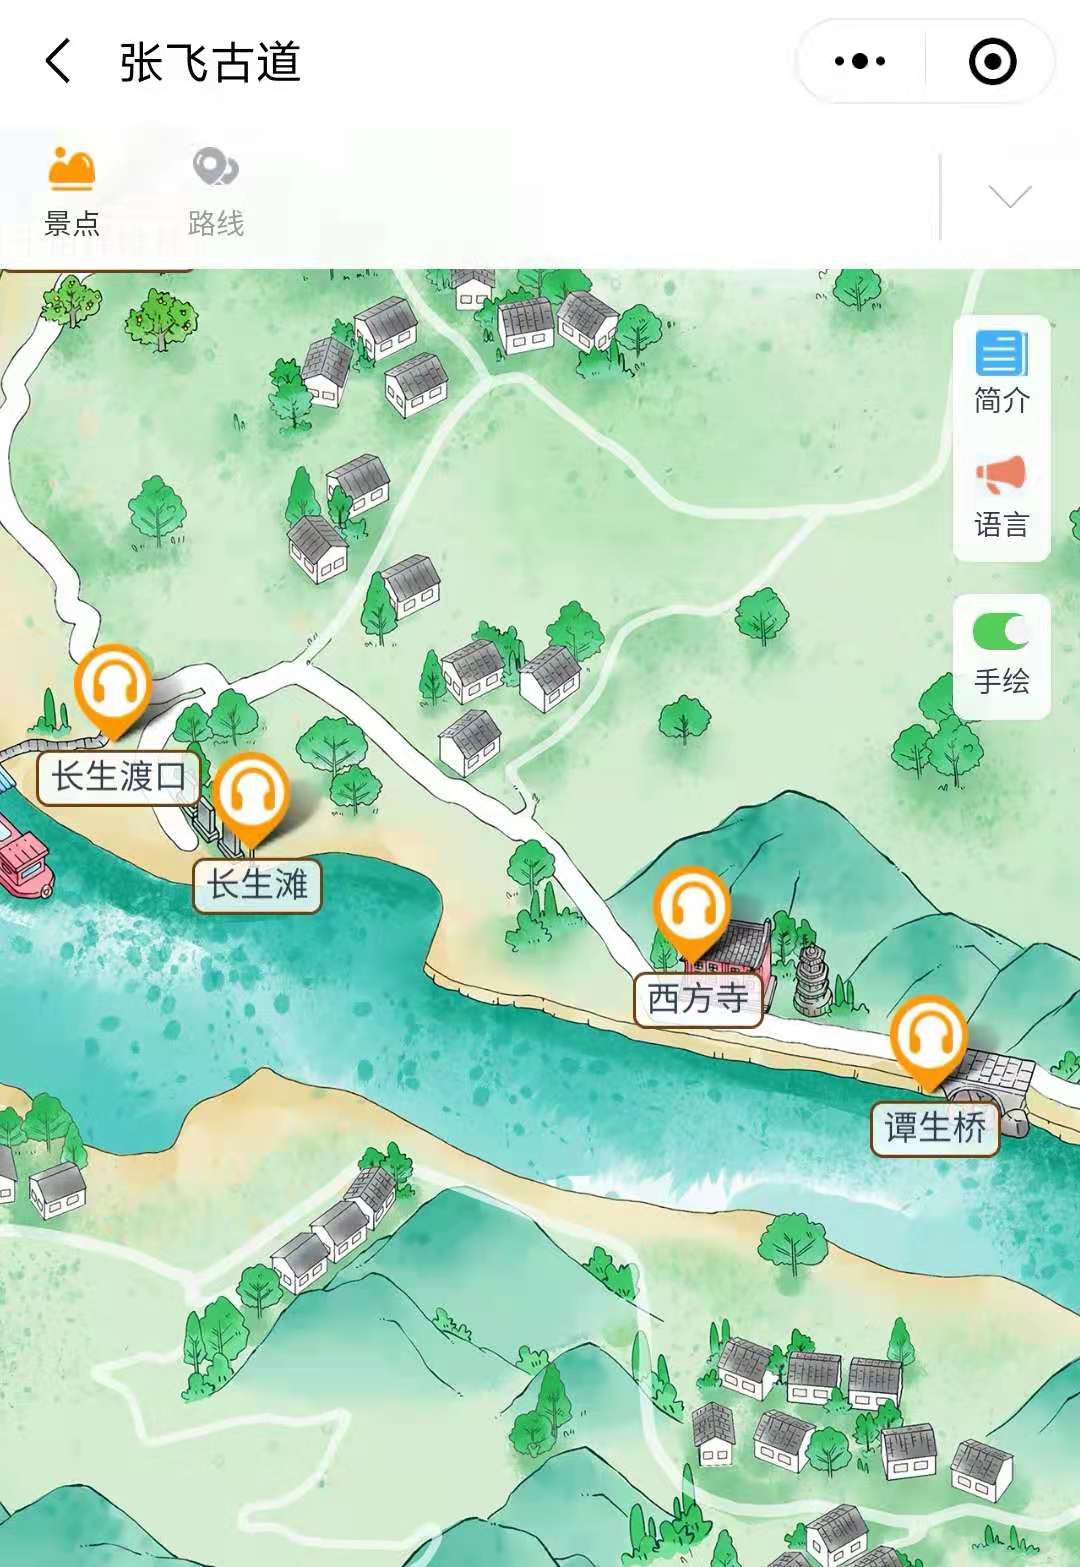 2021张飞古道手绘地图，电子导览，语音讲解系统上线.jpg